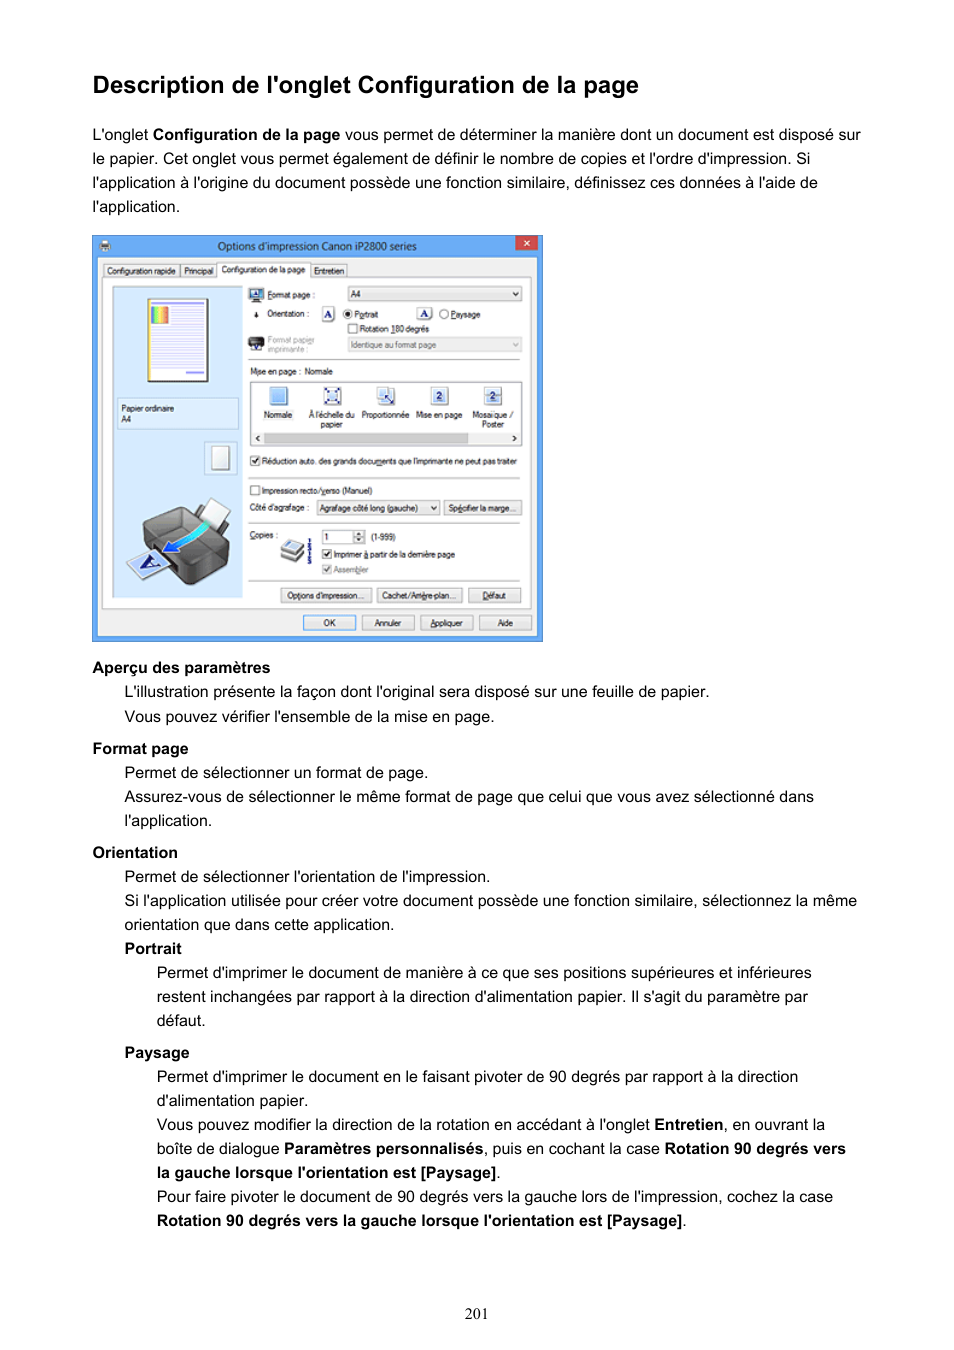 Description de l'onglet configuration de la page | Canon PIXMA iP2850 Manuel d'utilisation | Page 201 / 339